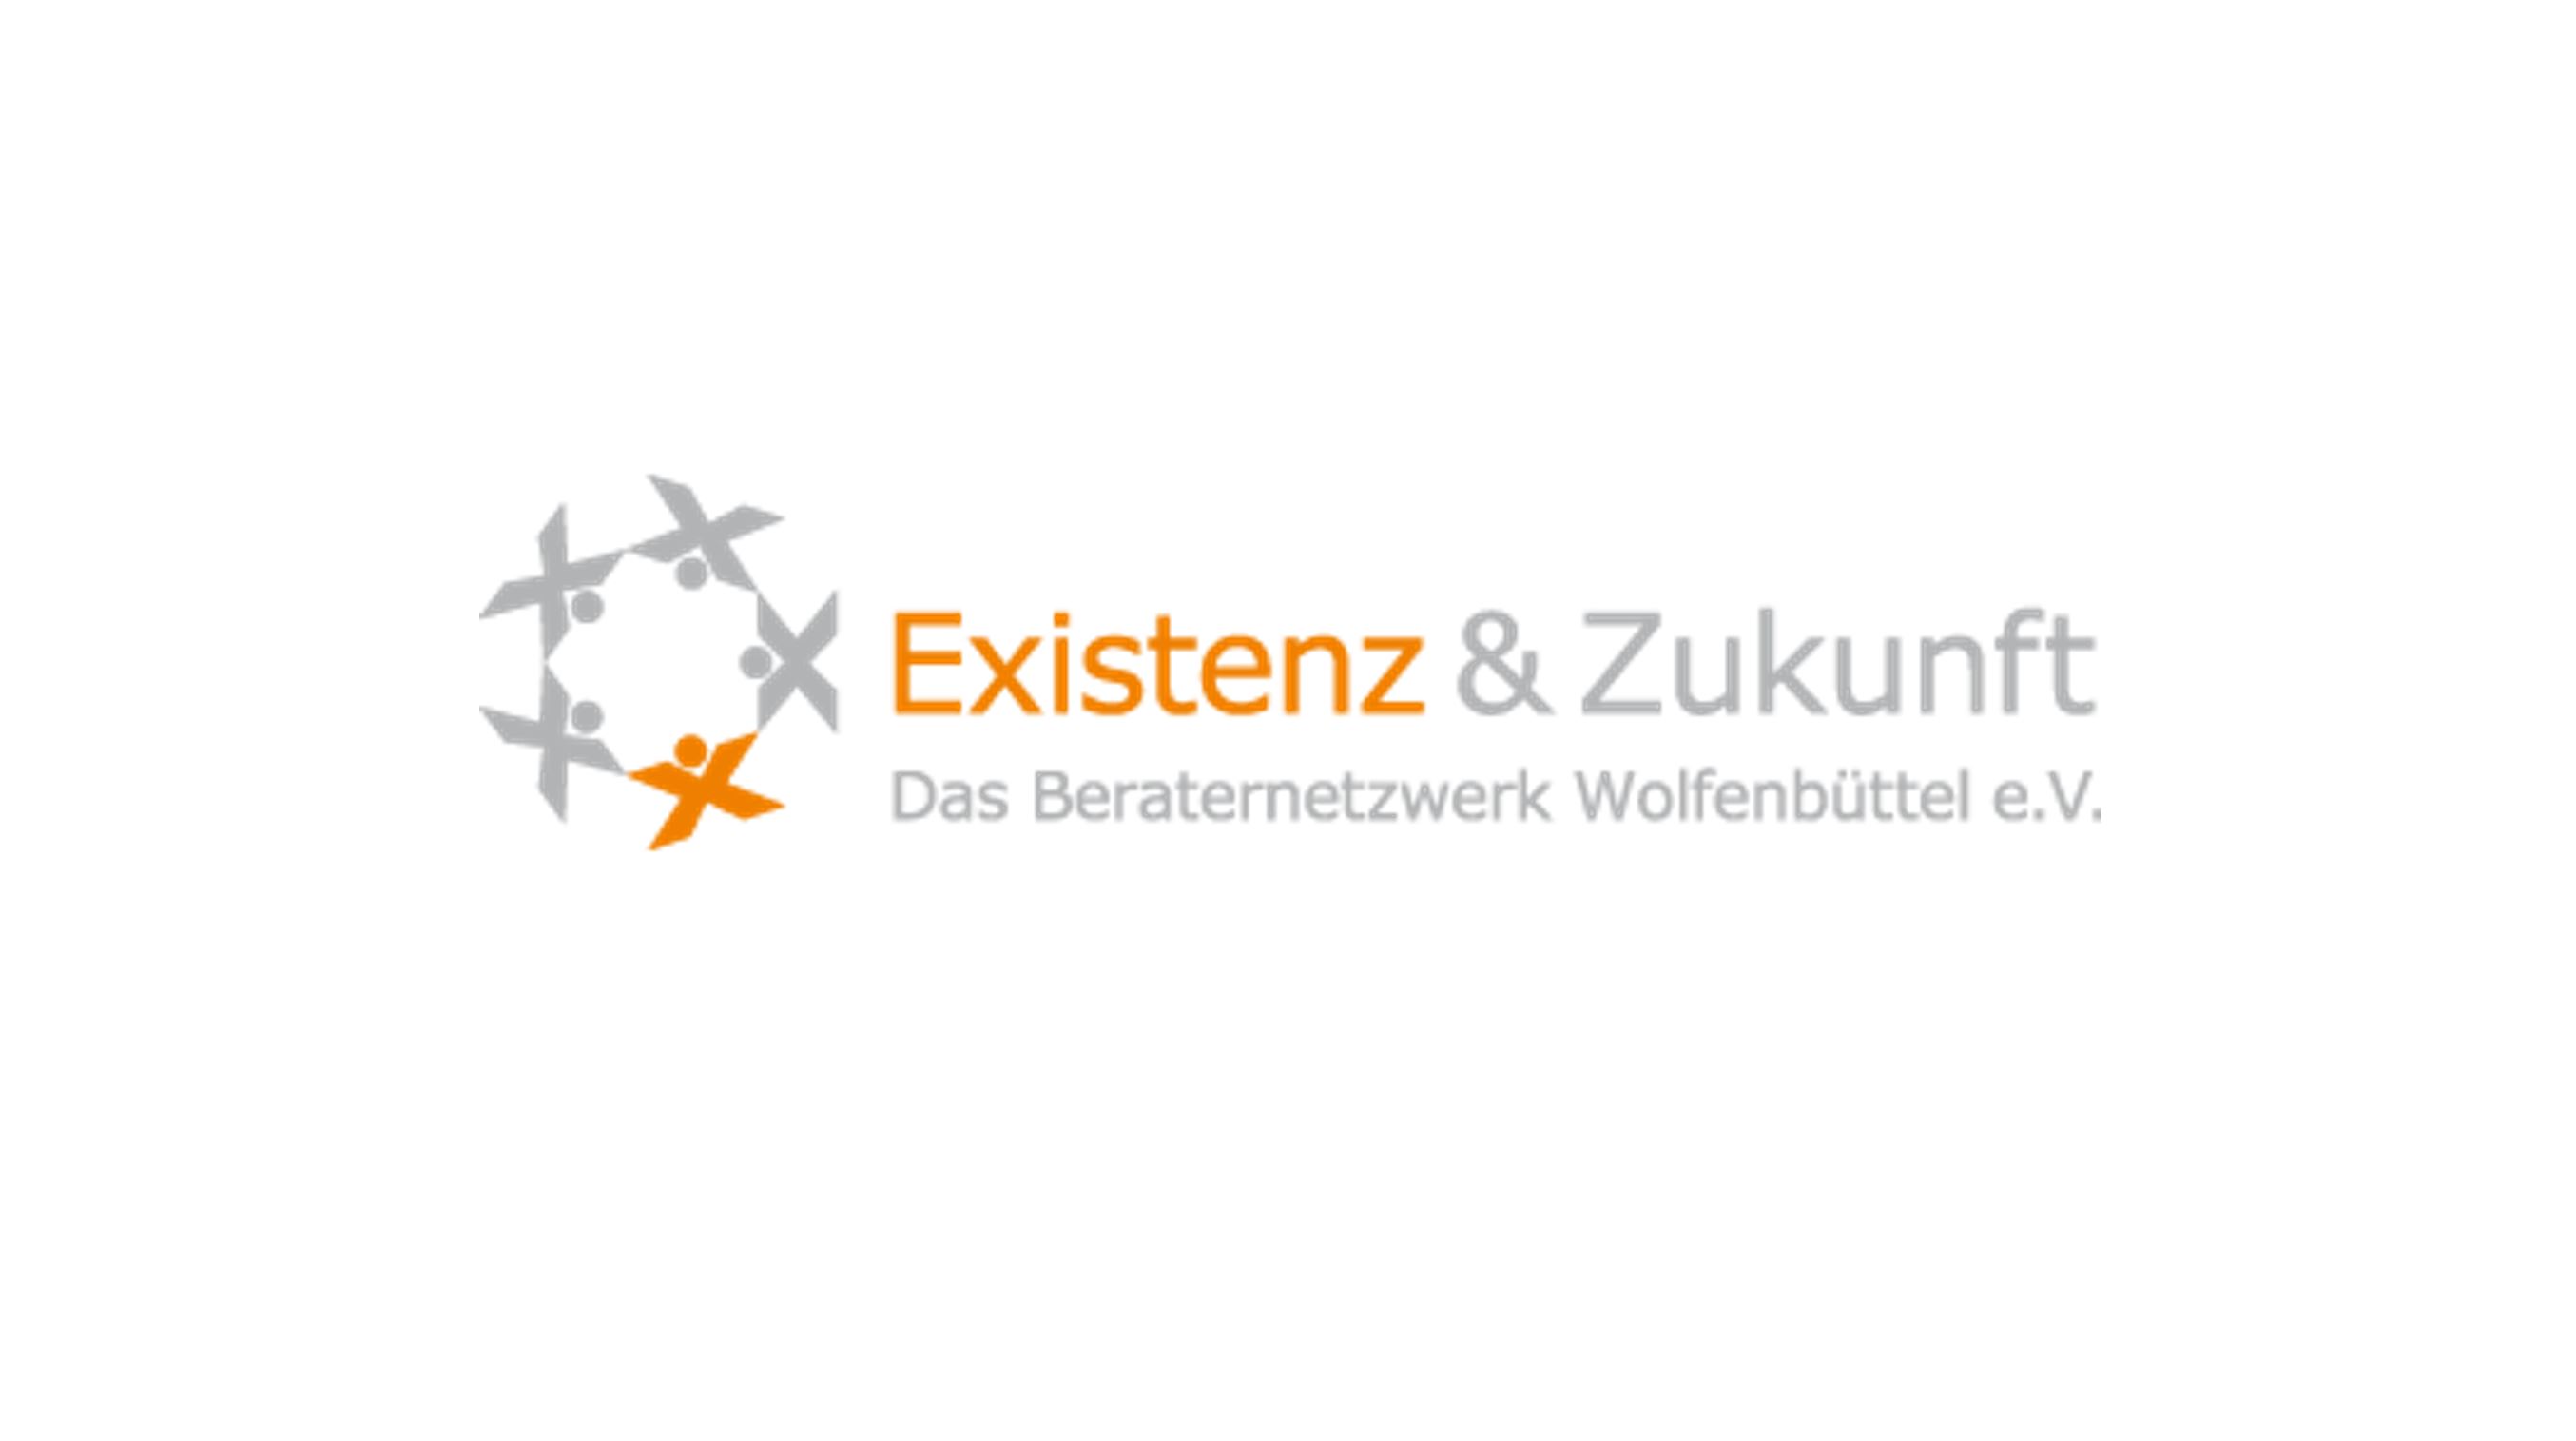 Existenz & Zukunft - Das Beraternetzwerk Wolfenbüttel e.V.